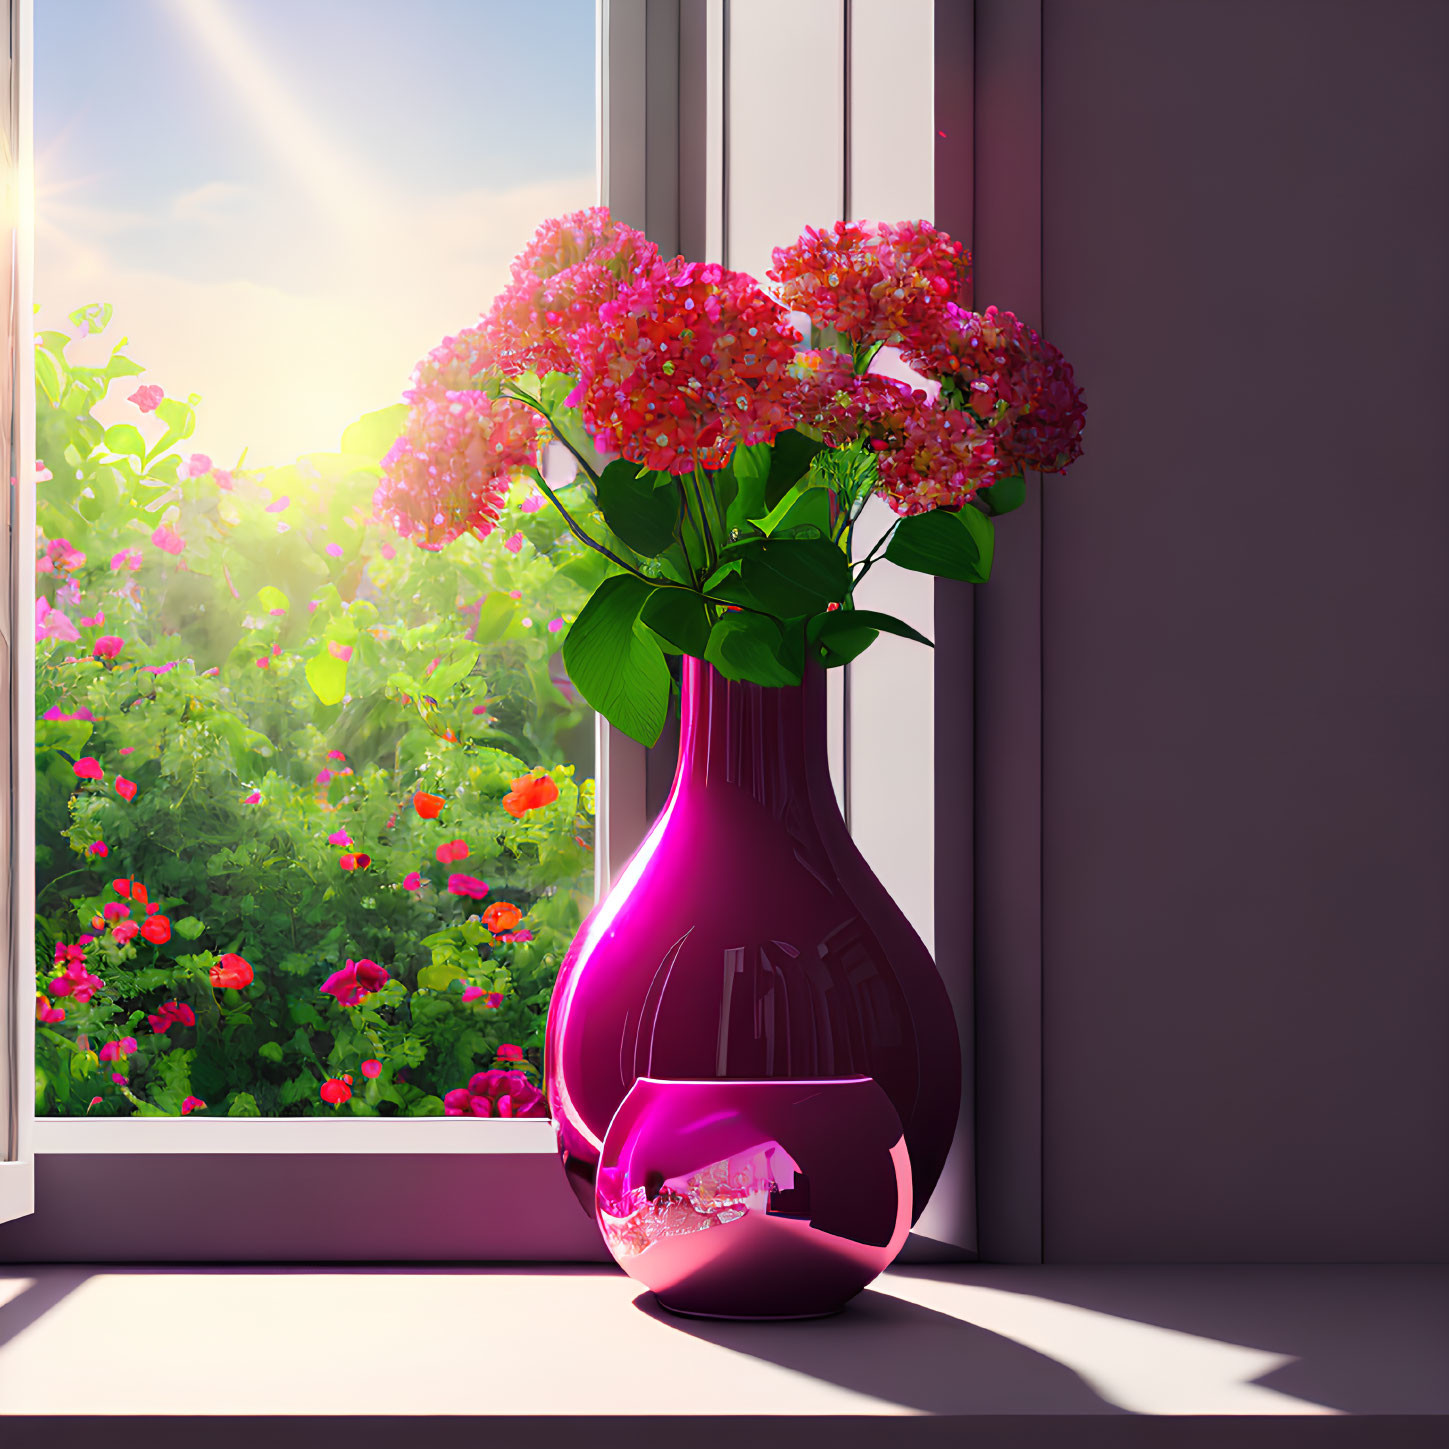 Pink flowers in shiny purple vase on sunny windowsill overlooking garden